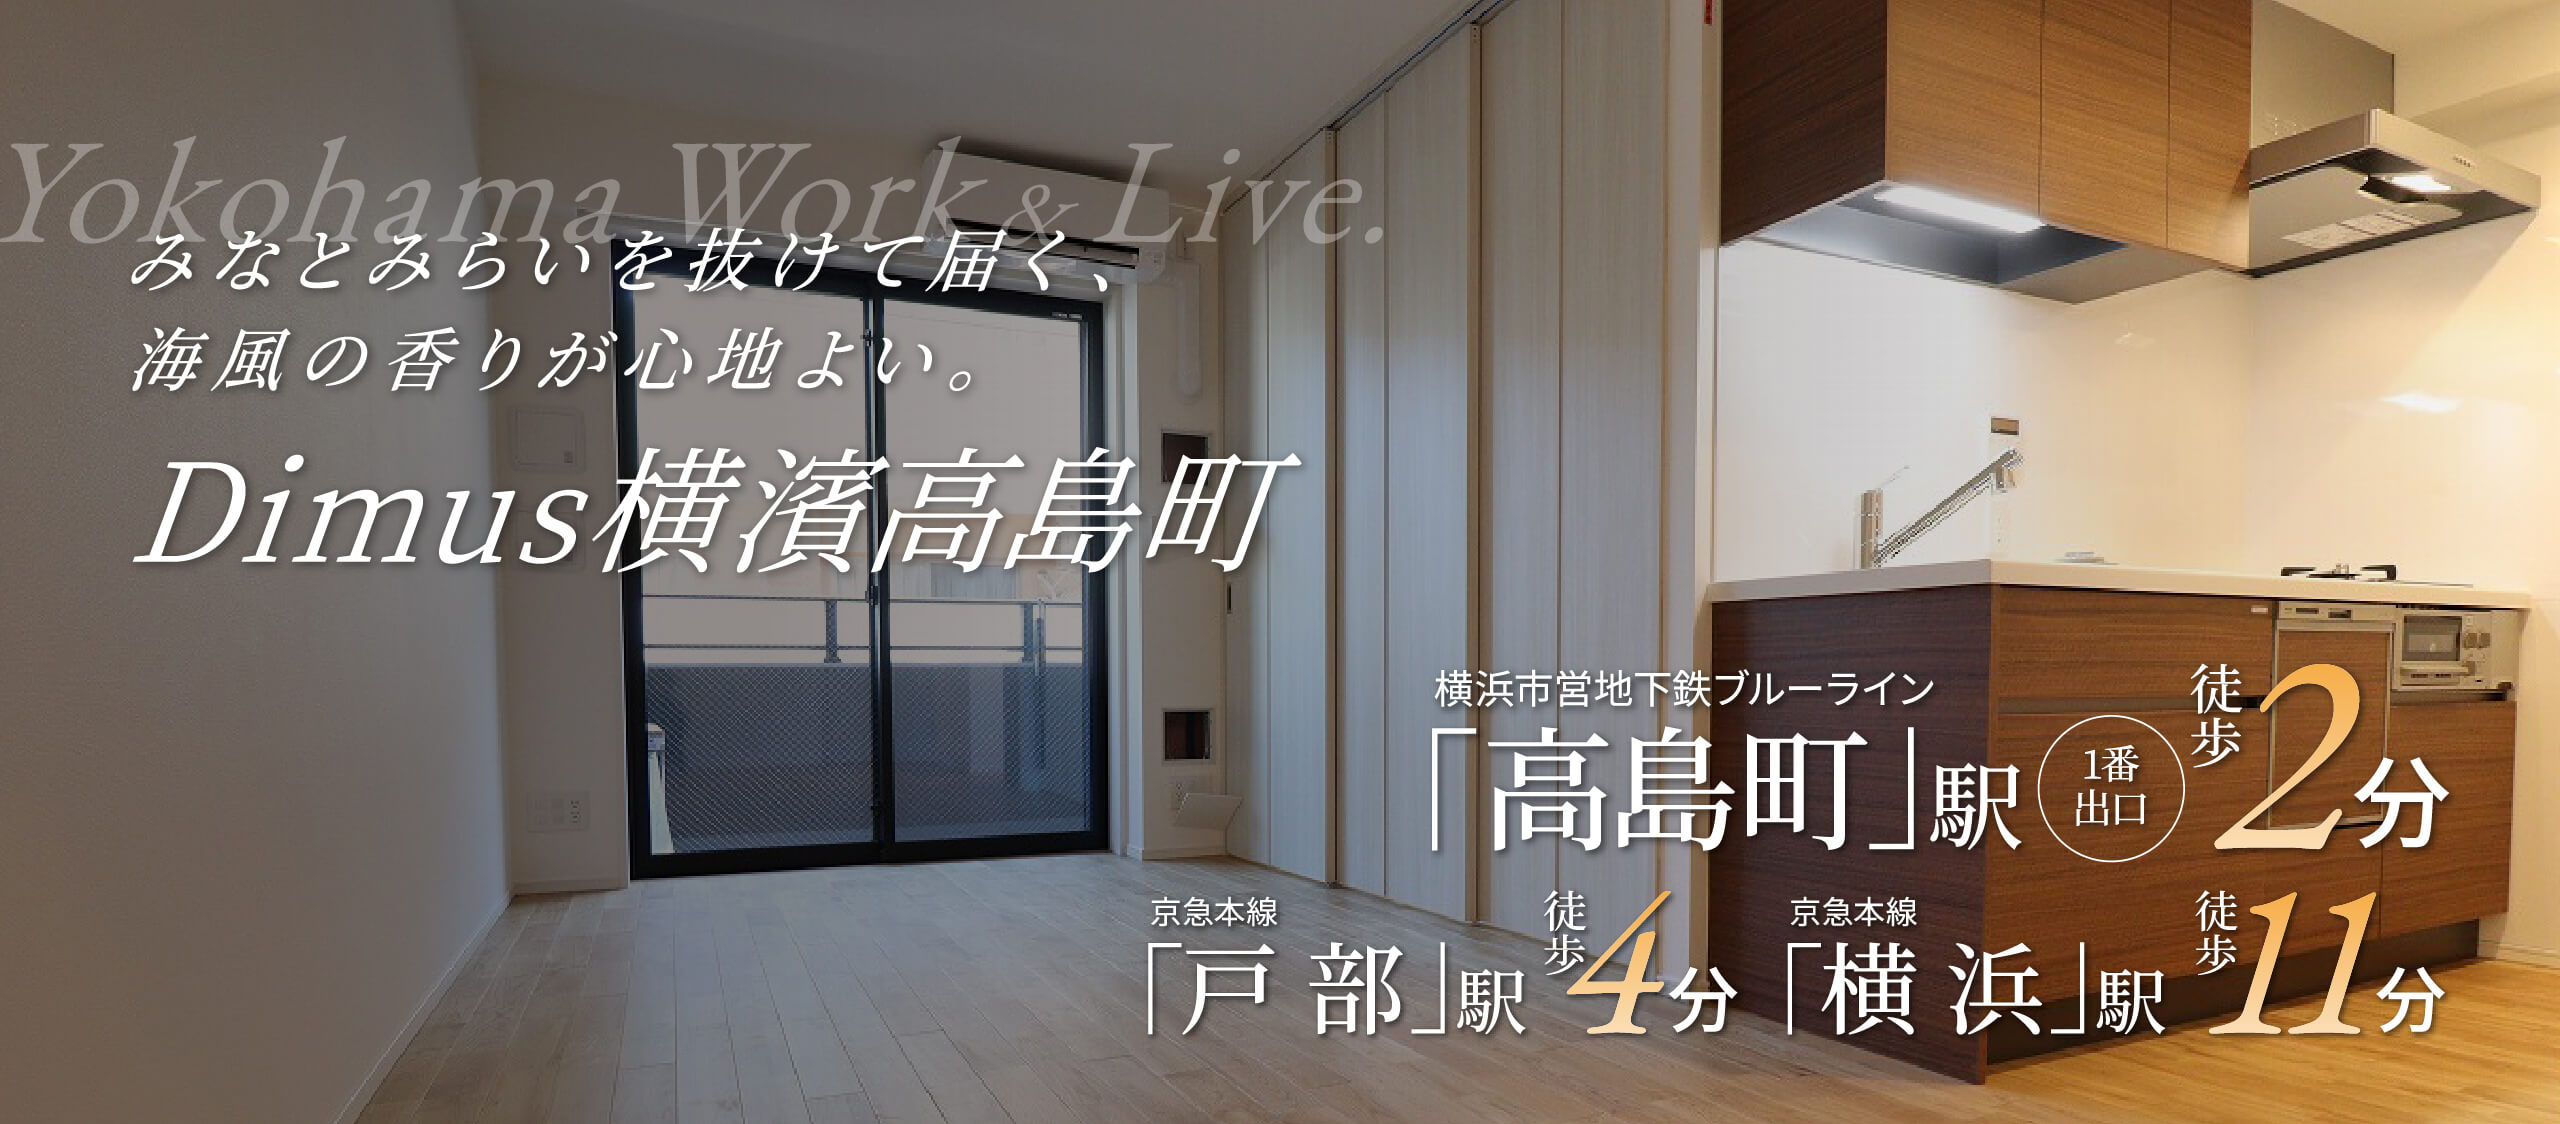 【公式】ディームス横濱高島町/東急住宅リースの賃貸マンション